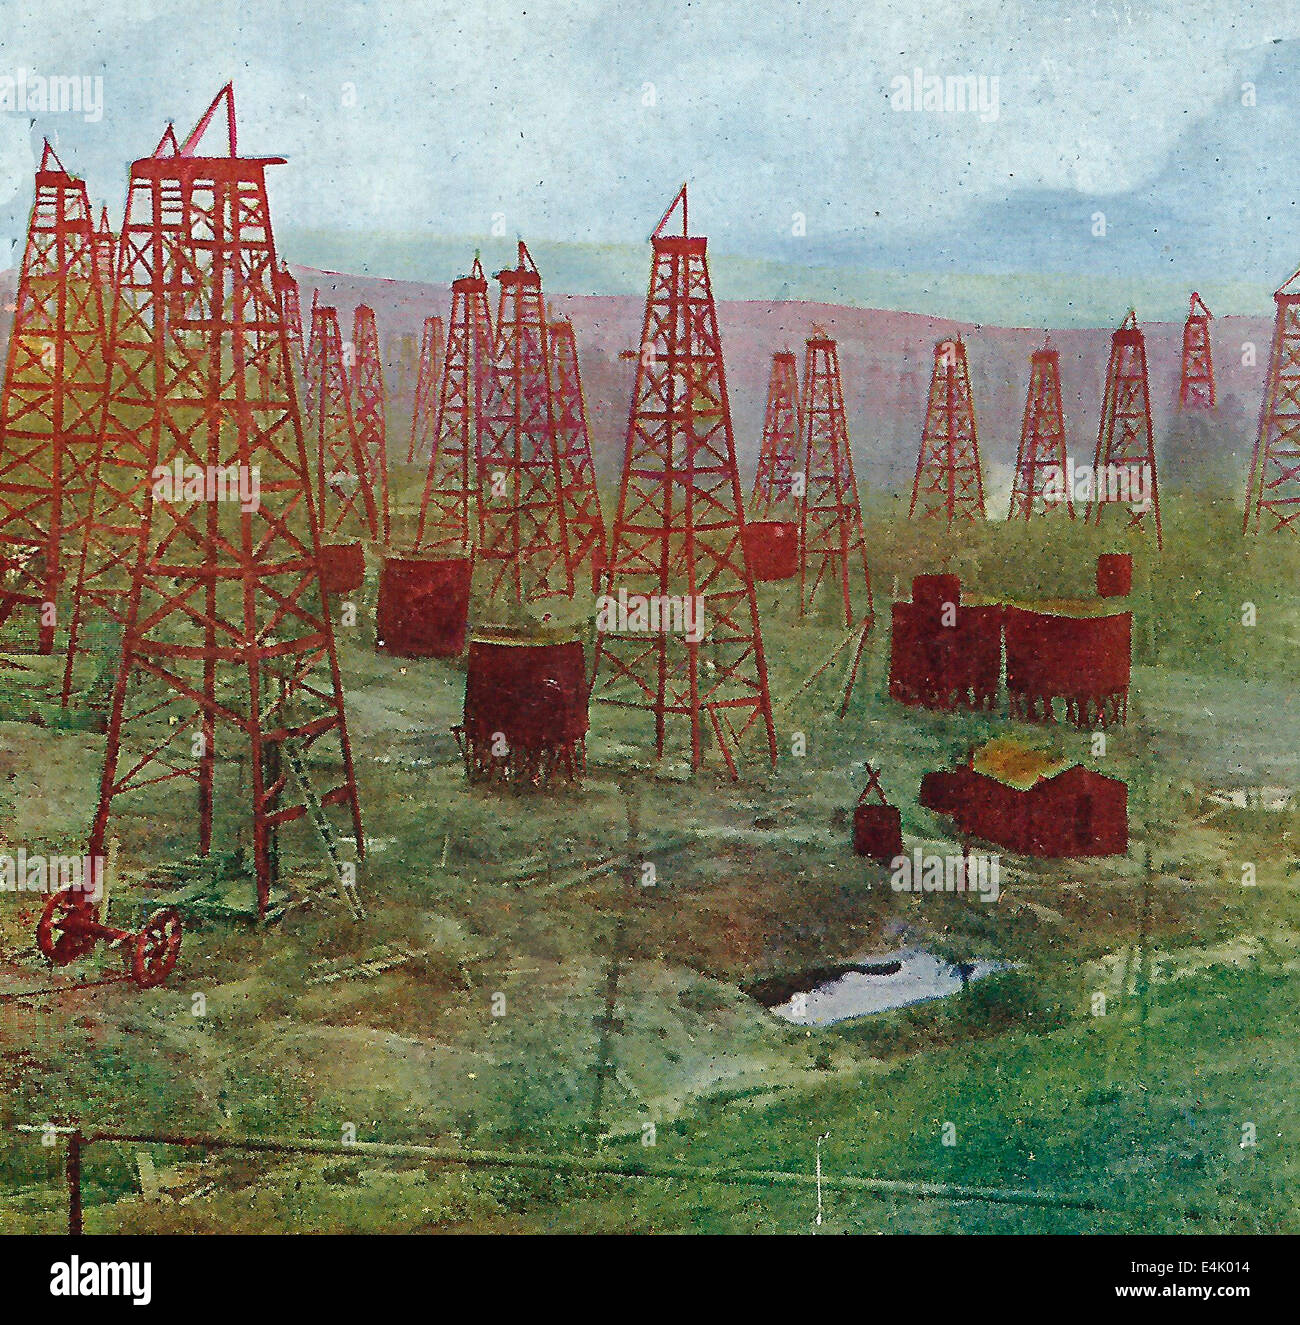 Une forêt de derricks de puits de pétrole et dans les champs de pétrole près de Los Angeles, Californie, vers 1900 Banque D'Images